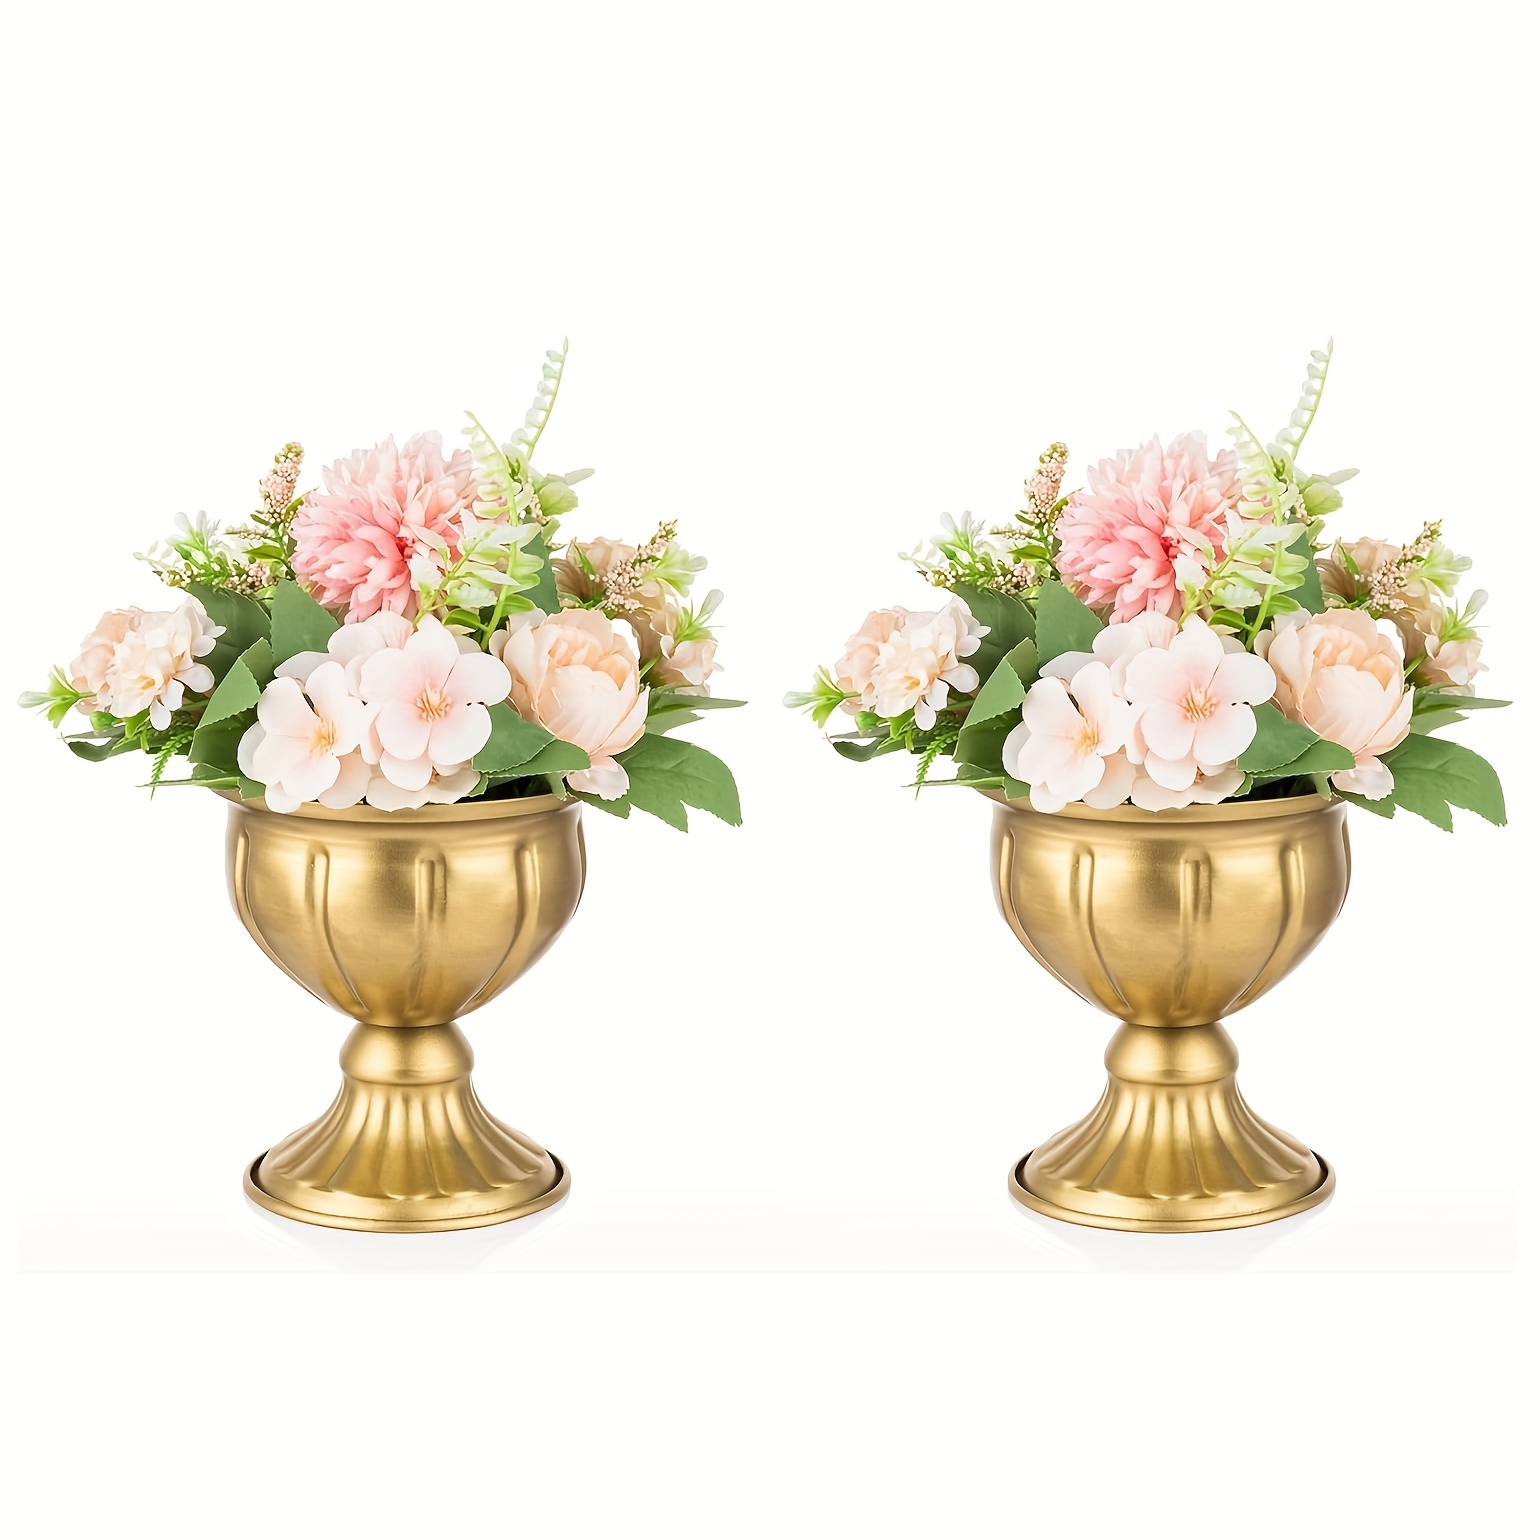 

Lot de 2 vases en métal doré pour centres de table de mariage, décoration de table intérieure pour salle à manger, petits pots de fleurs d'extérieur pour anniversaire